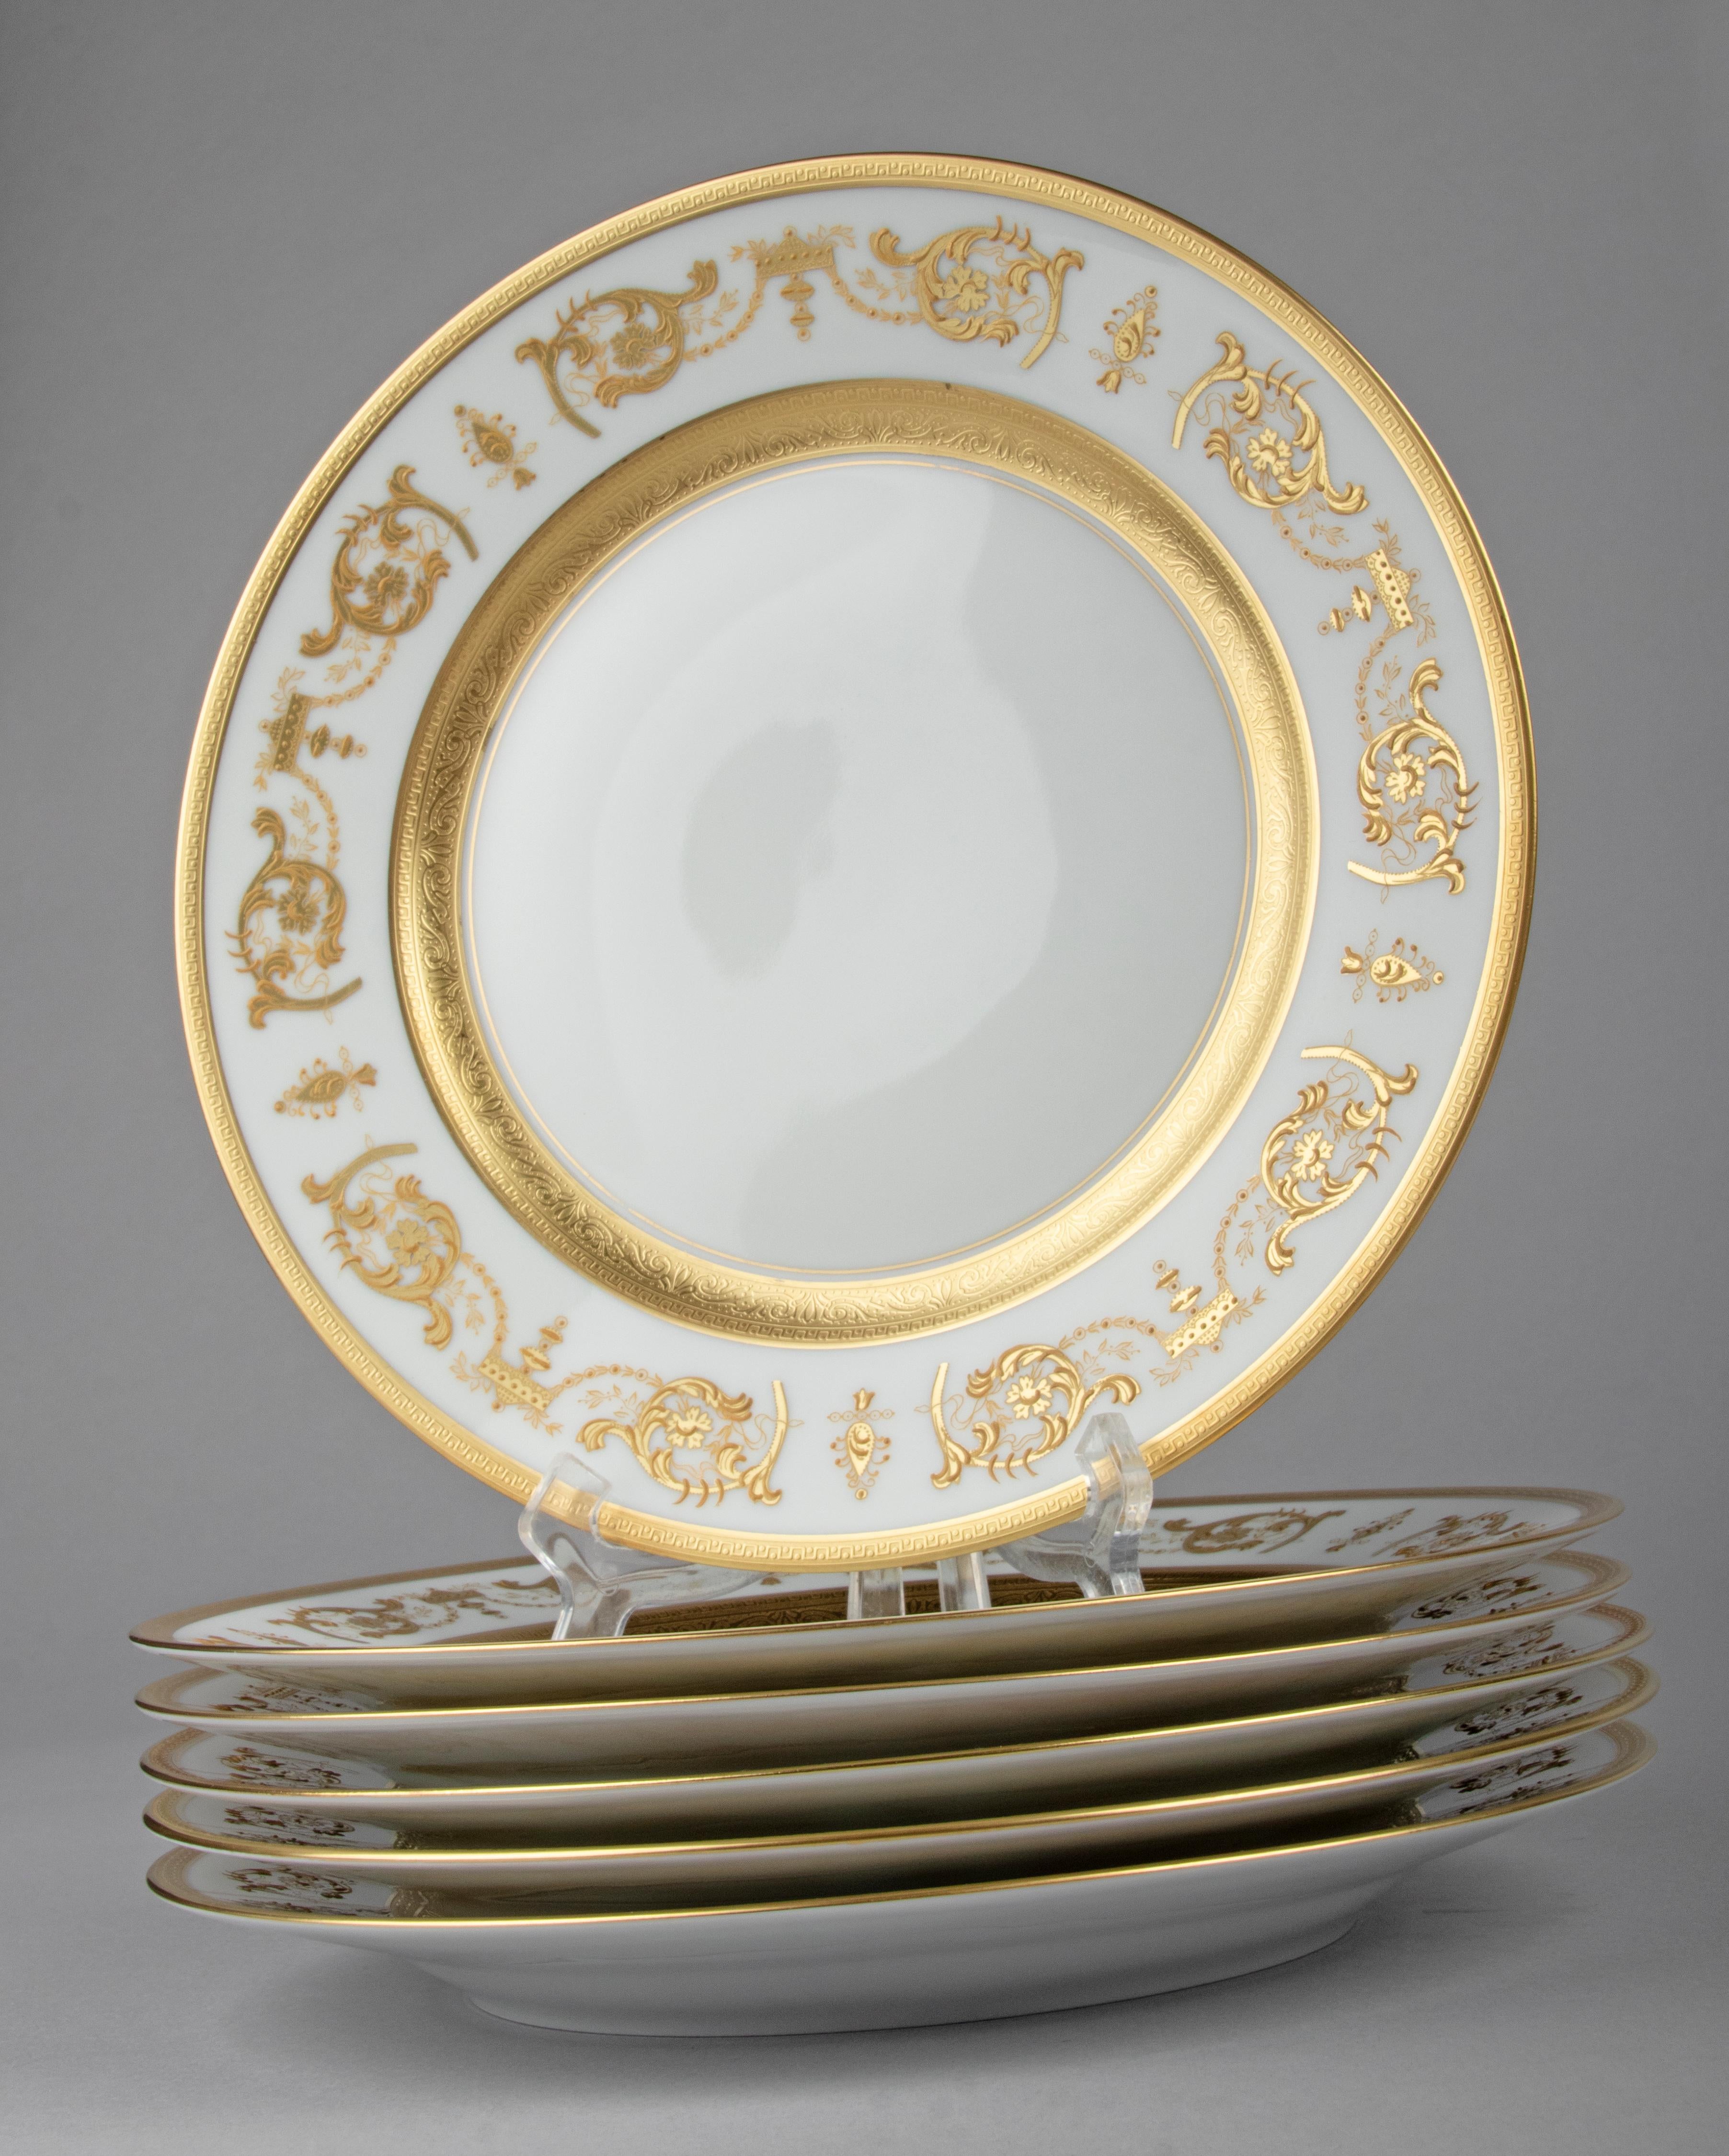 Set of 6 Porcelain Dinner Plates made by Haviland model Impérator Or 3